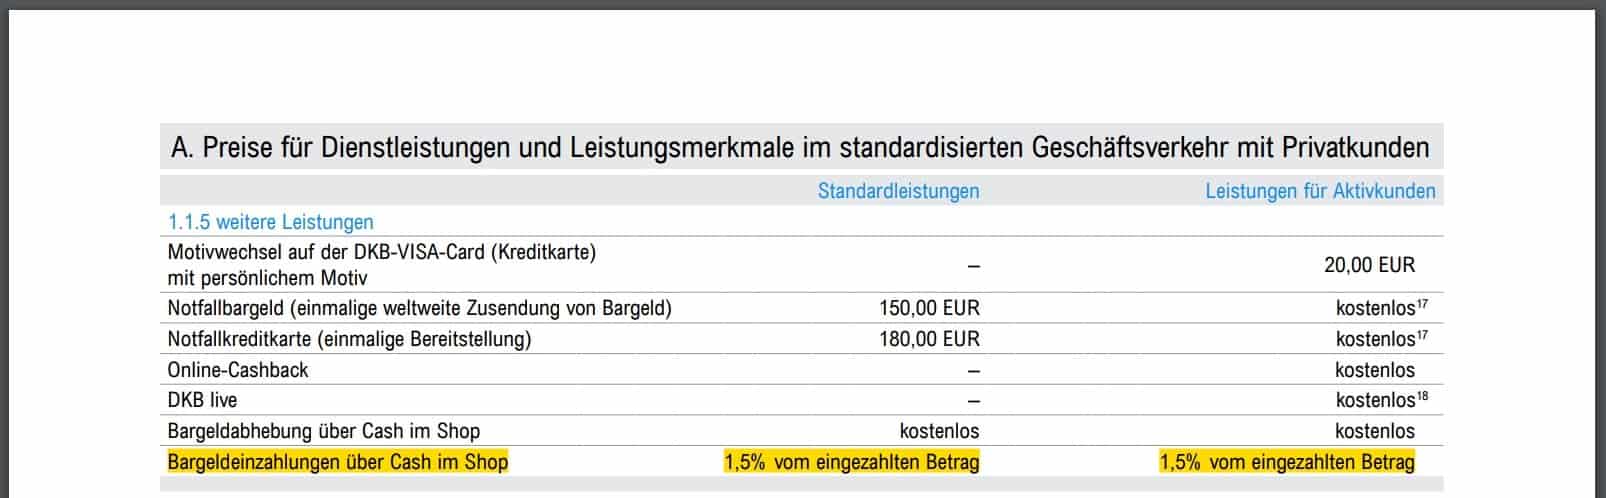 Deutsche Kreditbank - Änderung DKB-Cash-Vertrag - Allgemeine Geschäftsbedingungen